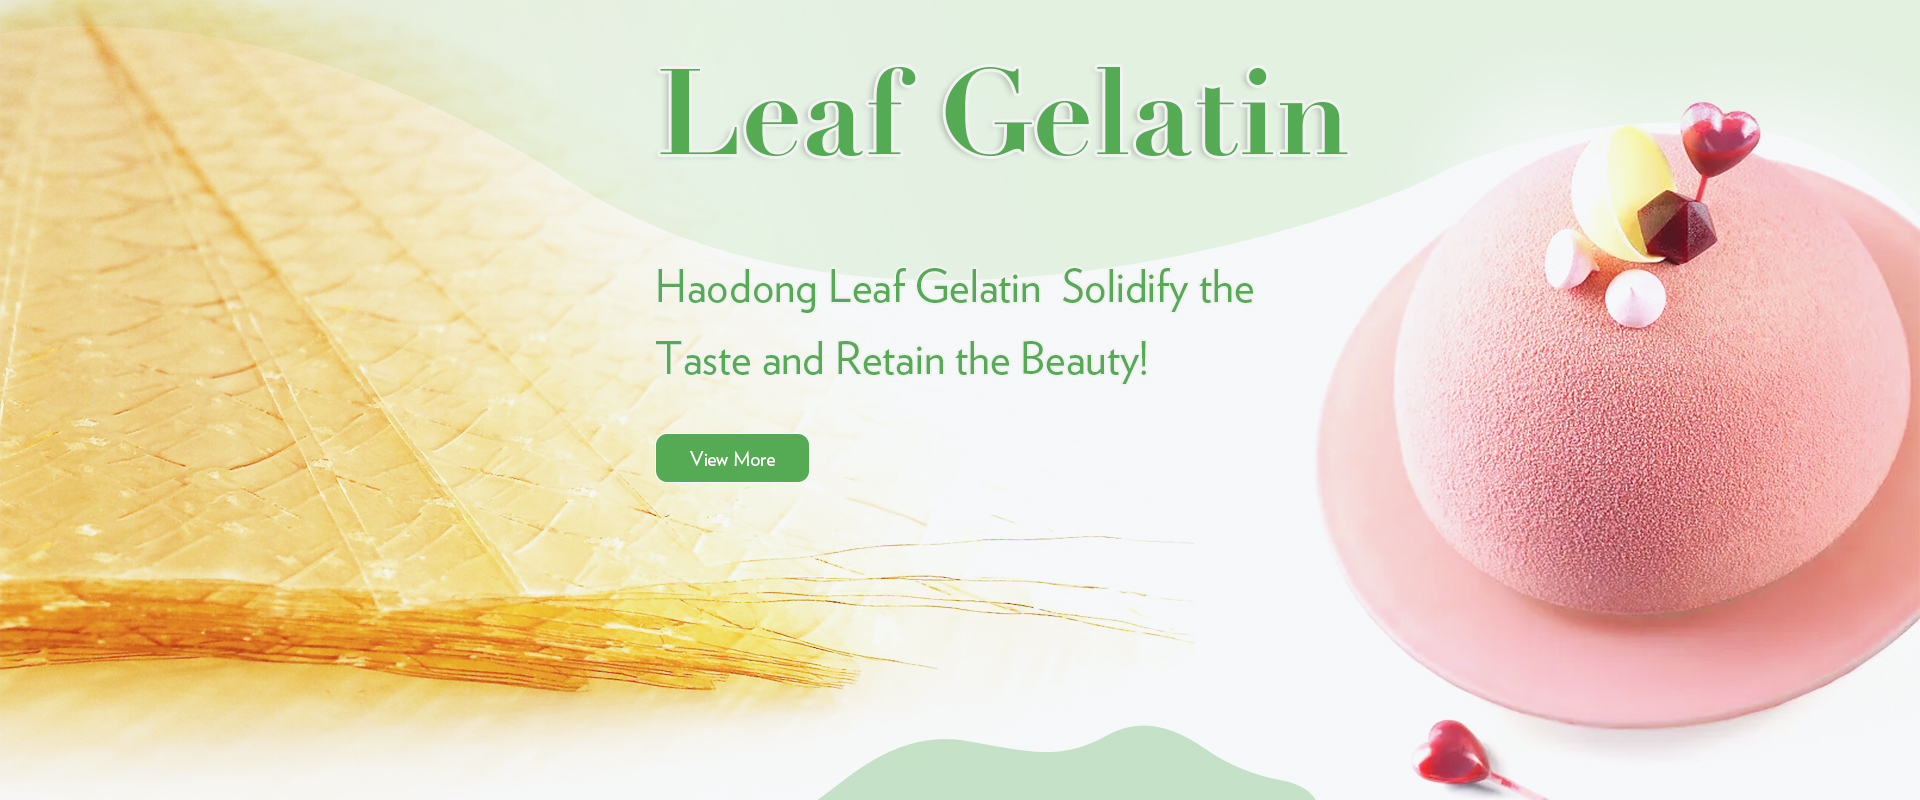 Leaf Gelatin